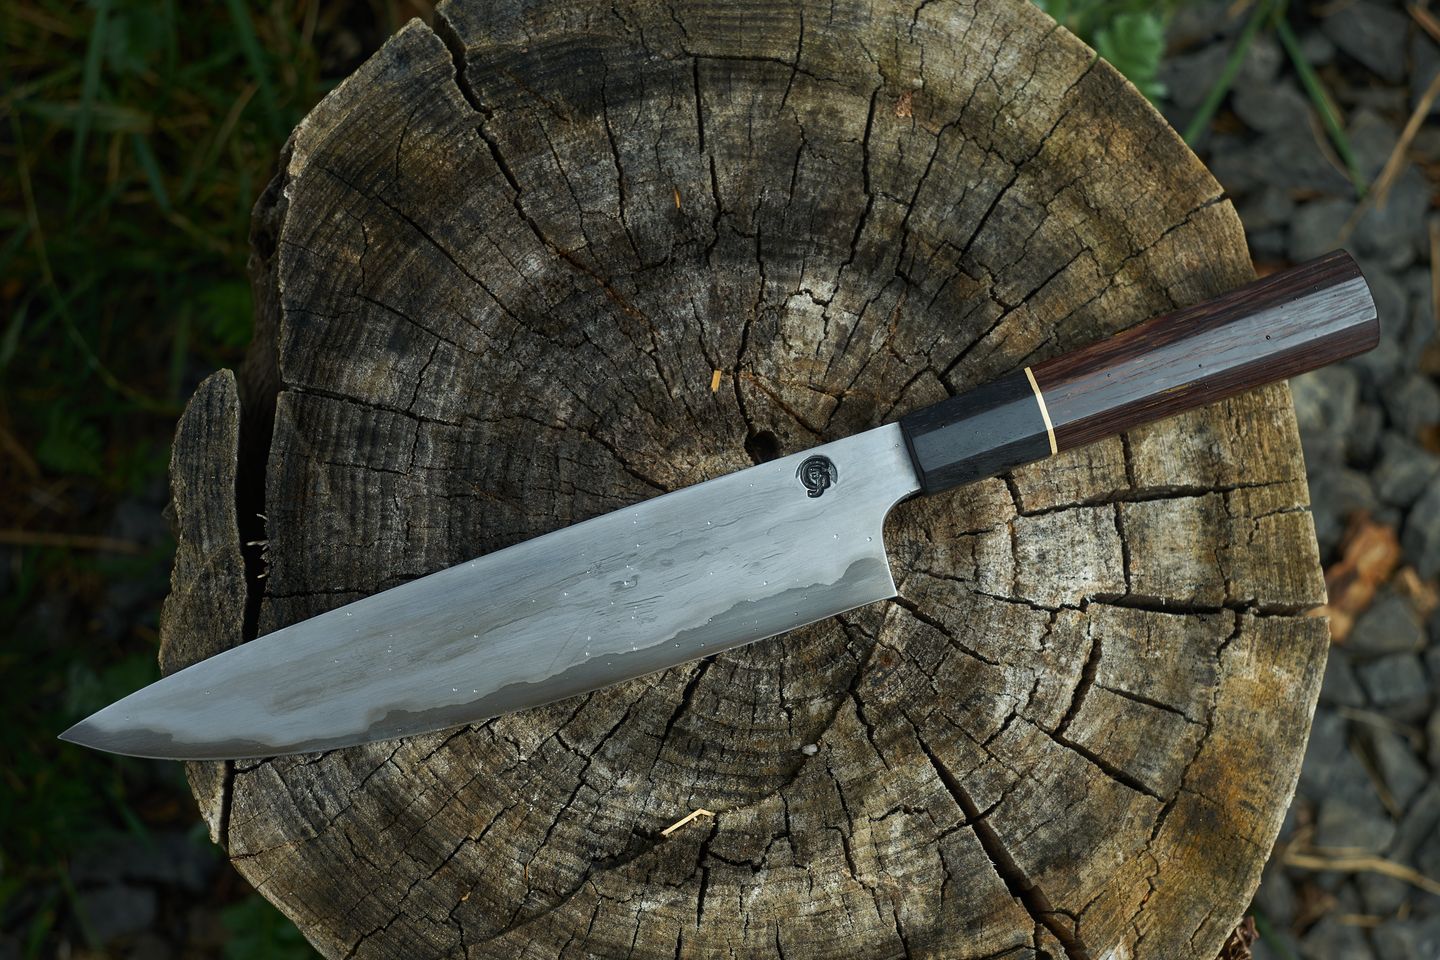 San-mai-cheff-knife